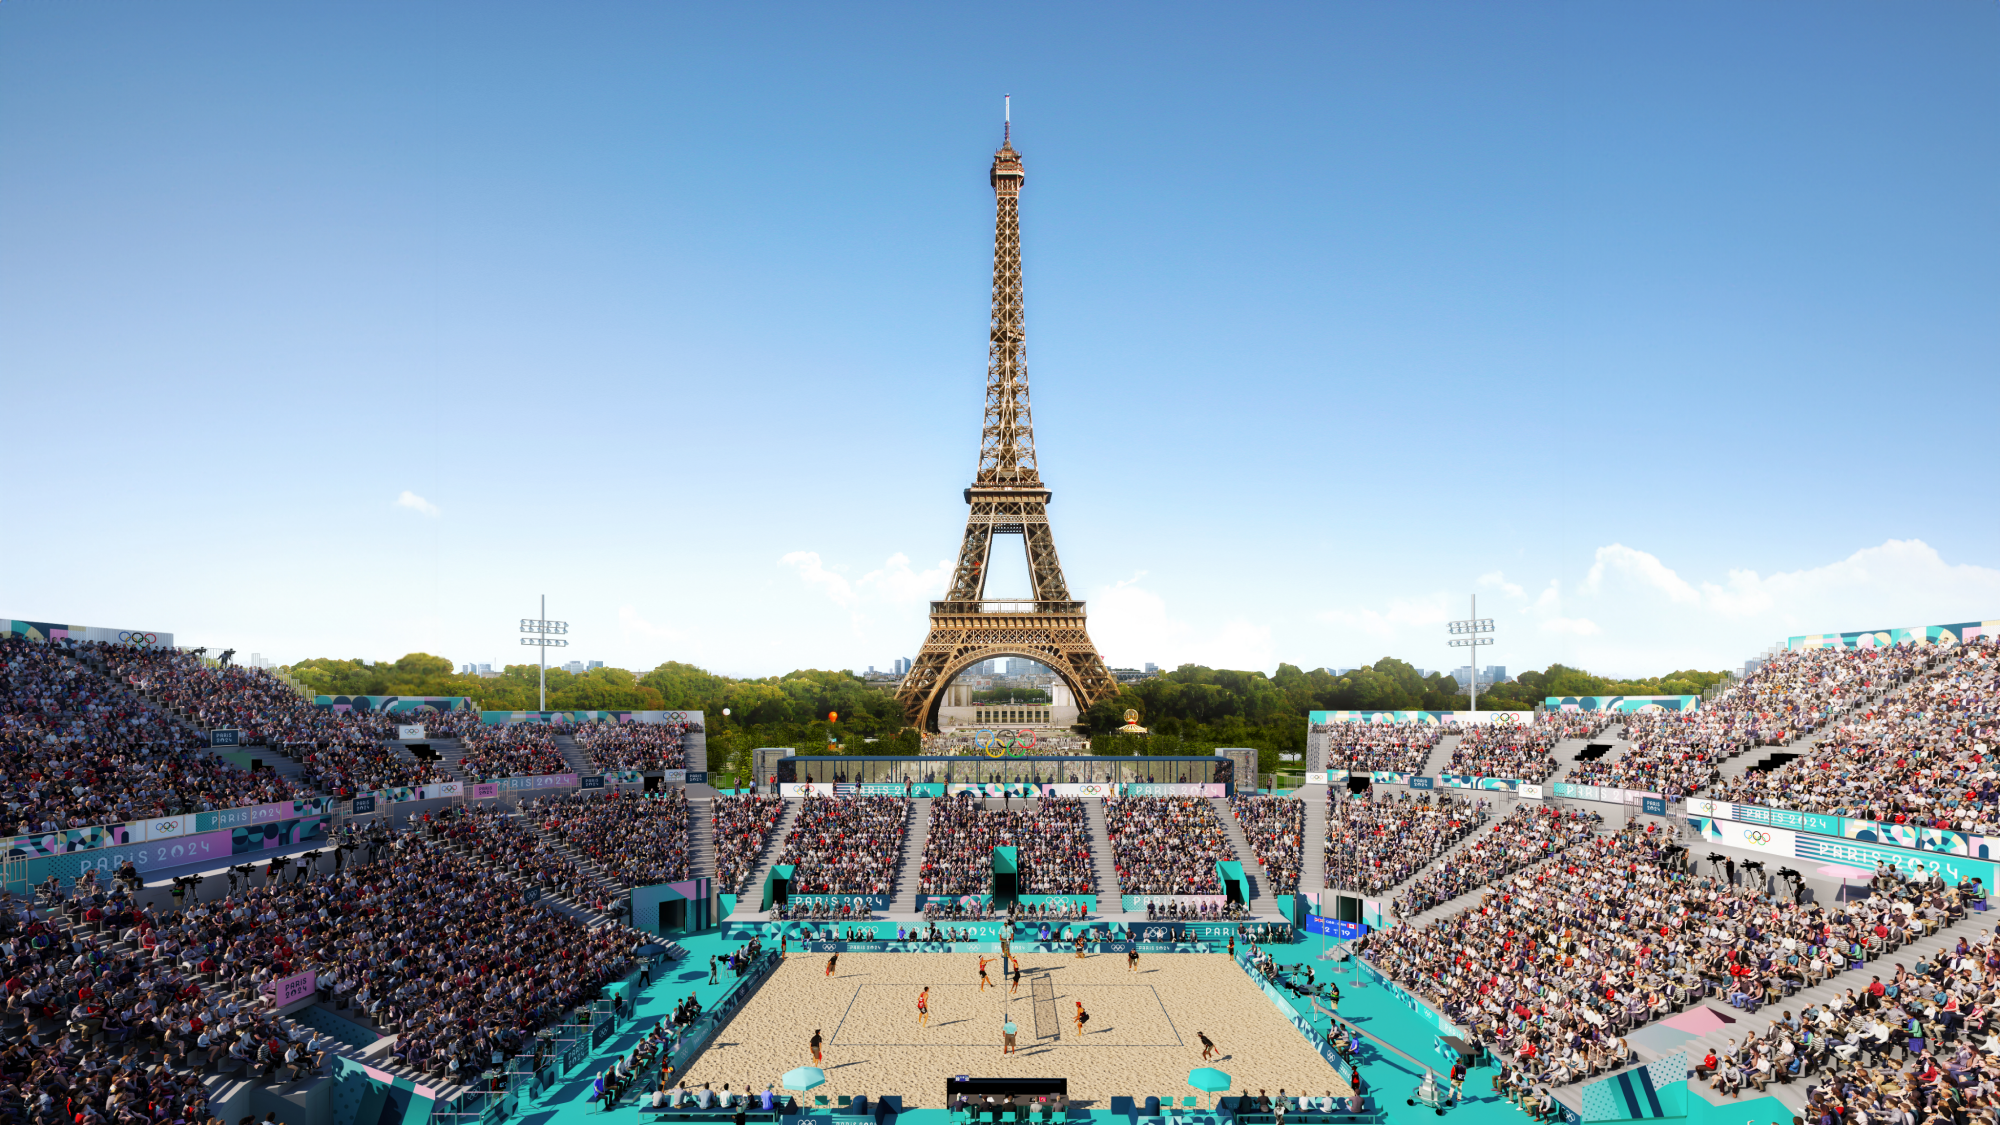 La Billetterie officielle des Jeux Olympiques Paris 2024 est